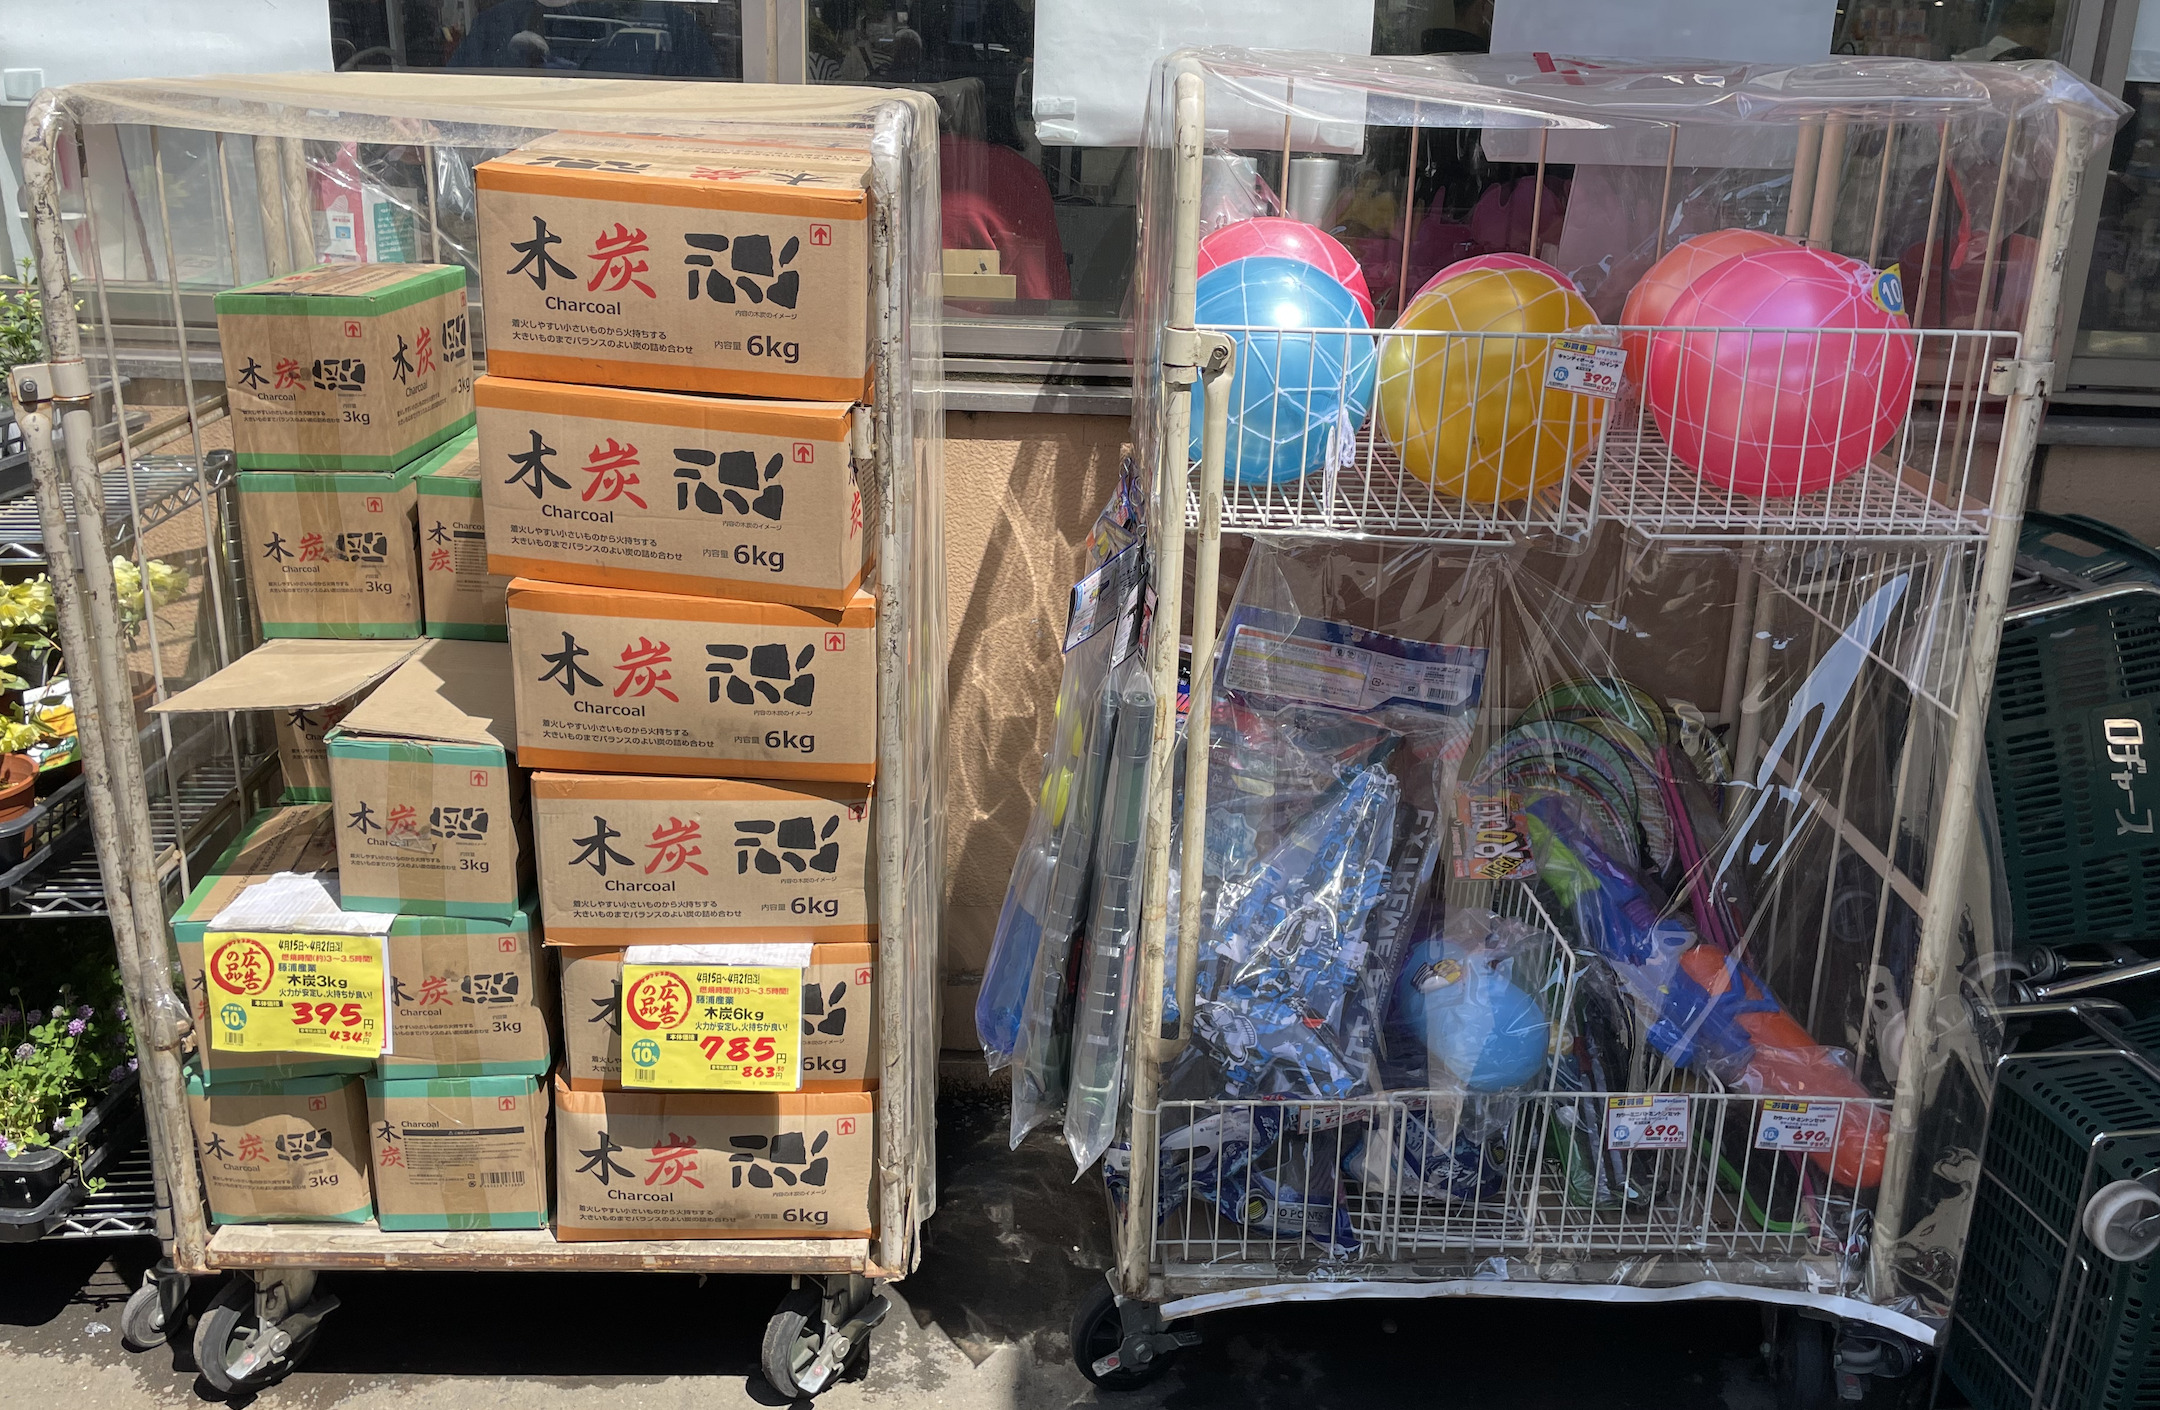 ロヂャース戸田店の店頭には炭や遊び道具も置かれています